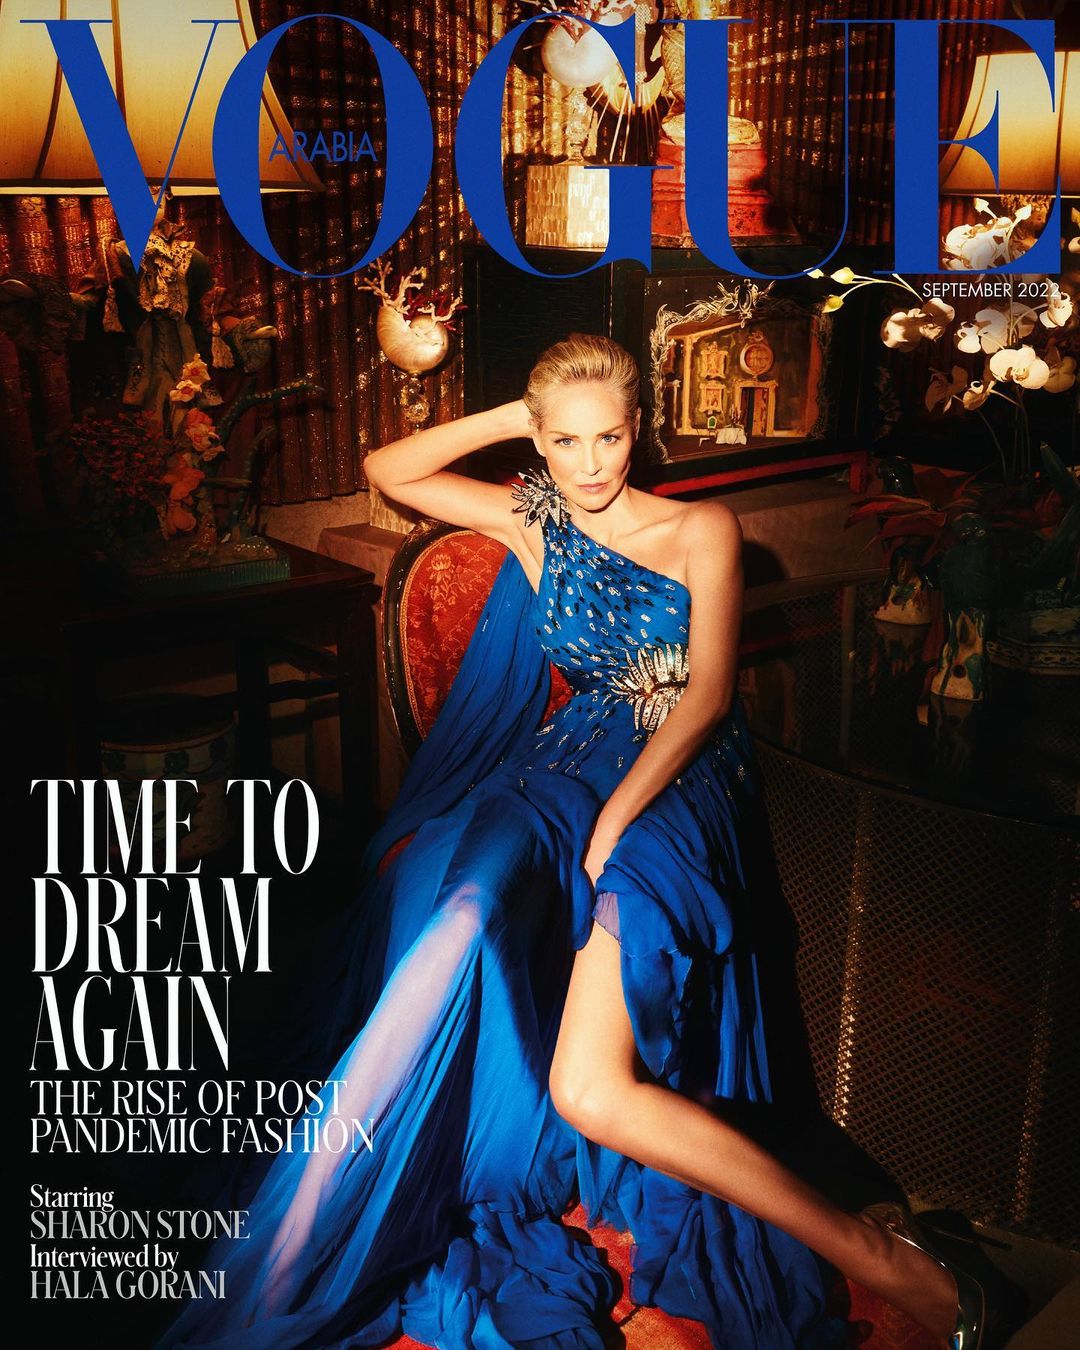 L'attrice Sharon Stone sulla copertina di "Vogue Arabia" (Instagram)